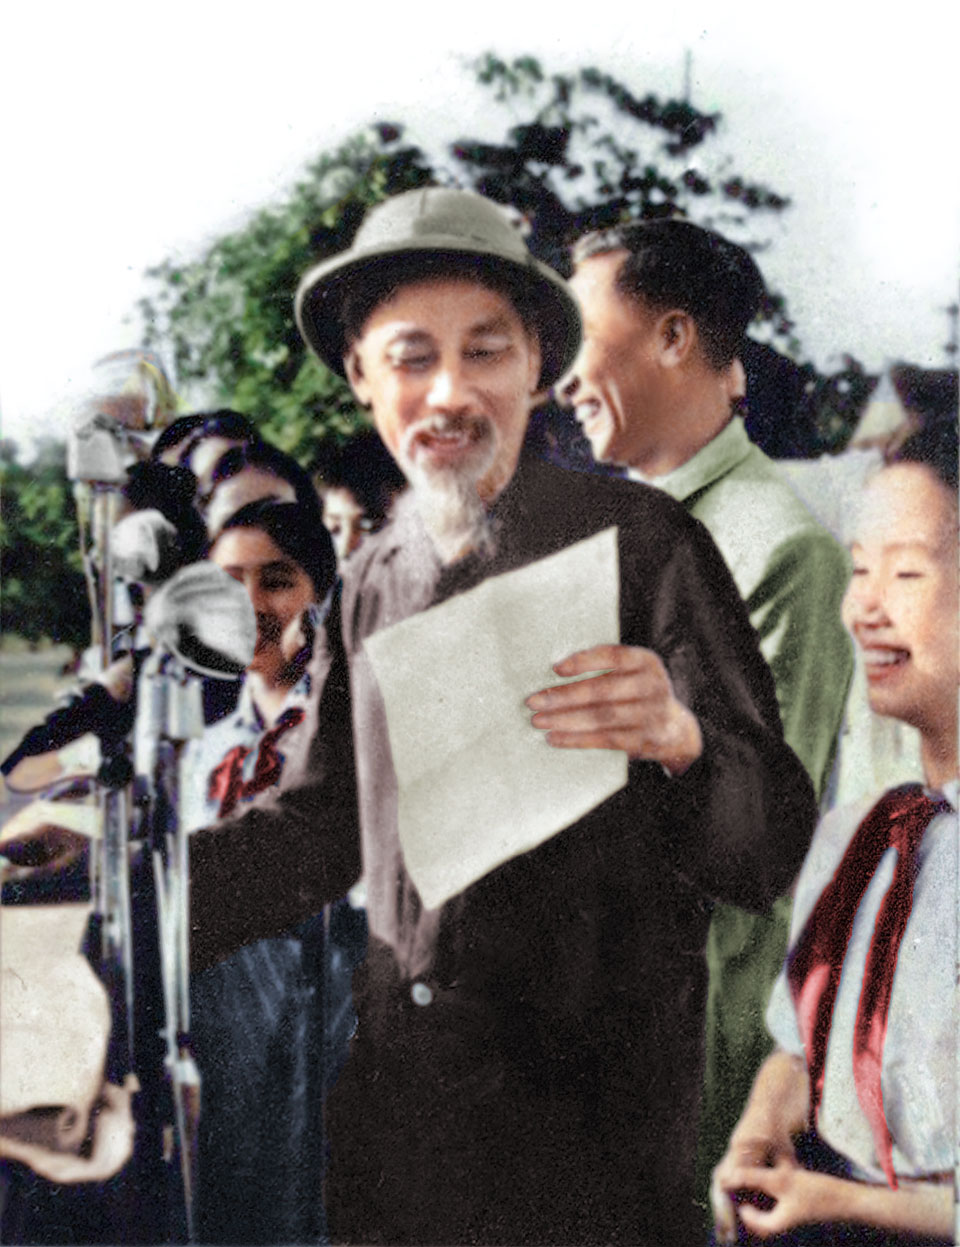 Chủ tịch Hồ Chí Minh nói chuyện với đồng bào Nam Định tại cuộc mít tinh chào mừng Đại hội đại biểu Đảng bộ tỉnh Nam Định lần thứ V thành công, ngày 22-5-1963.
